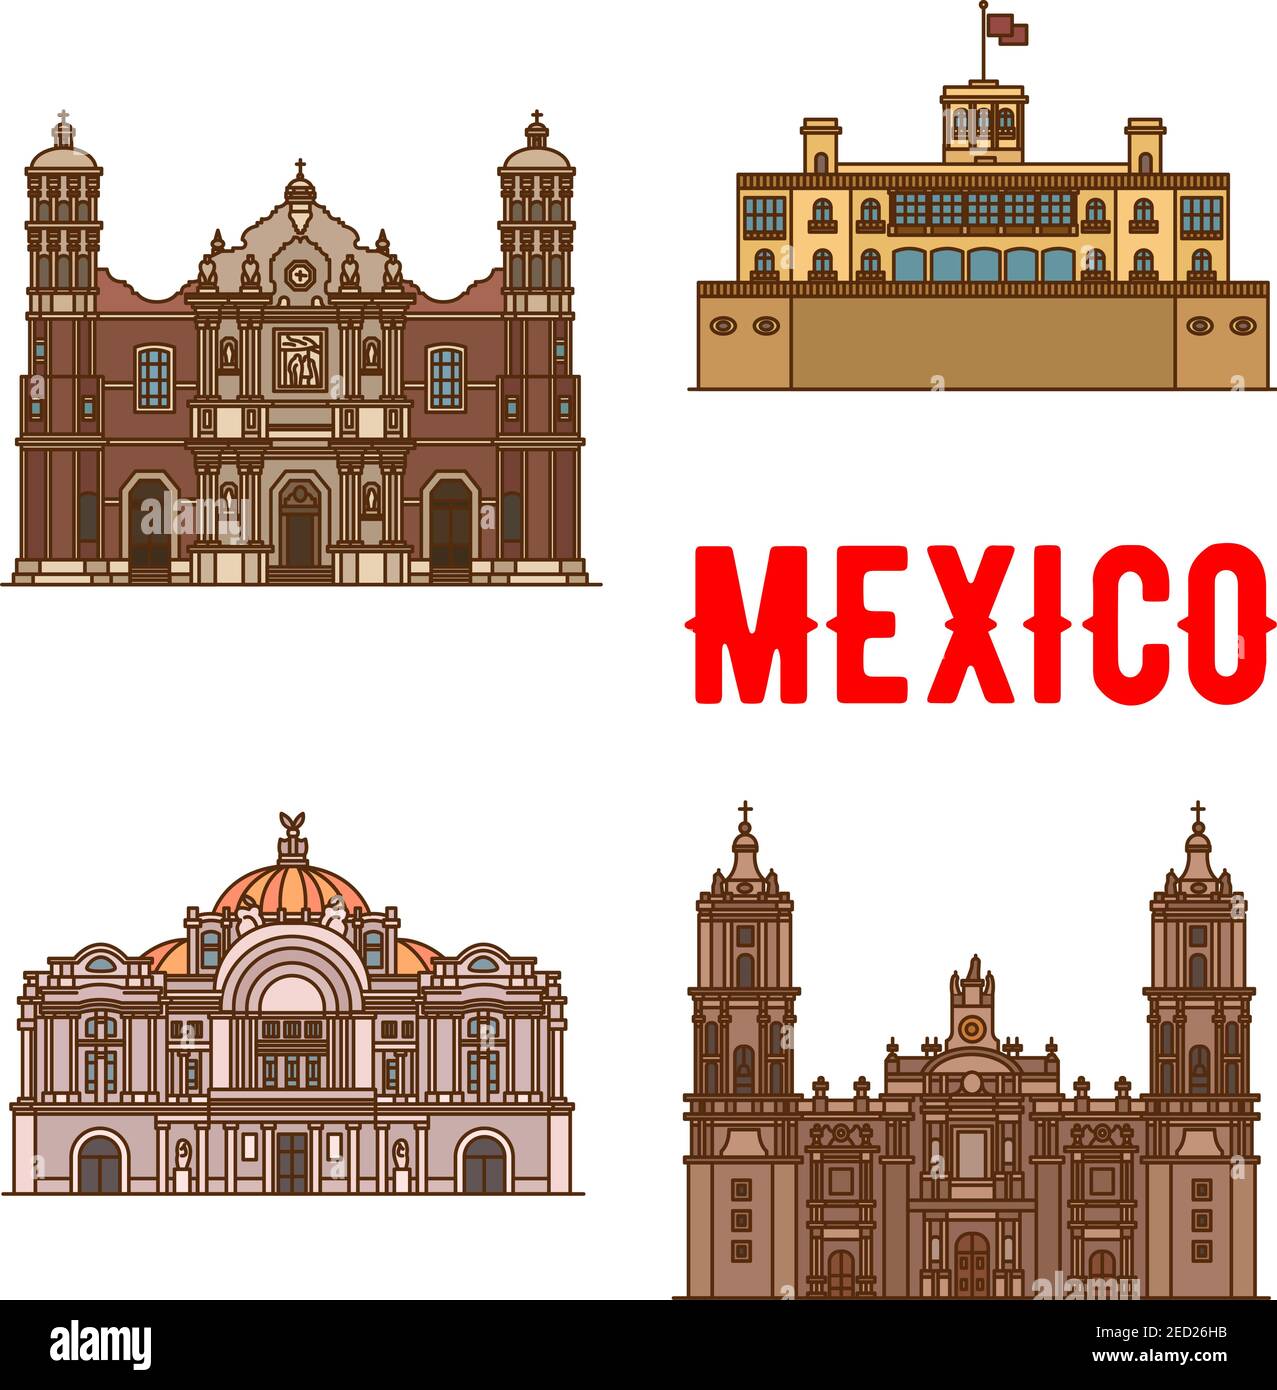 Sehenswürdigkeiten und Sehenswürdigkeiten von Mexiko. Basilika unserer Lieben Frau von Guadalupe, Schloss Chapultepec, Palast der Schönen Künste Mexiko, Kathedrale der Metropole. Stock Vektor